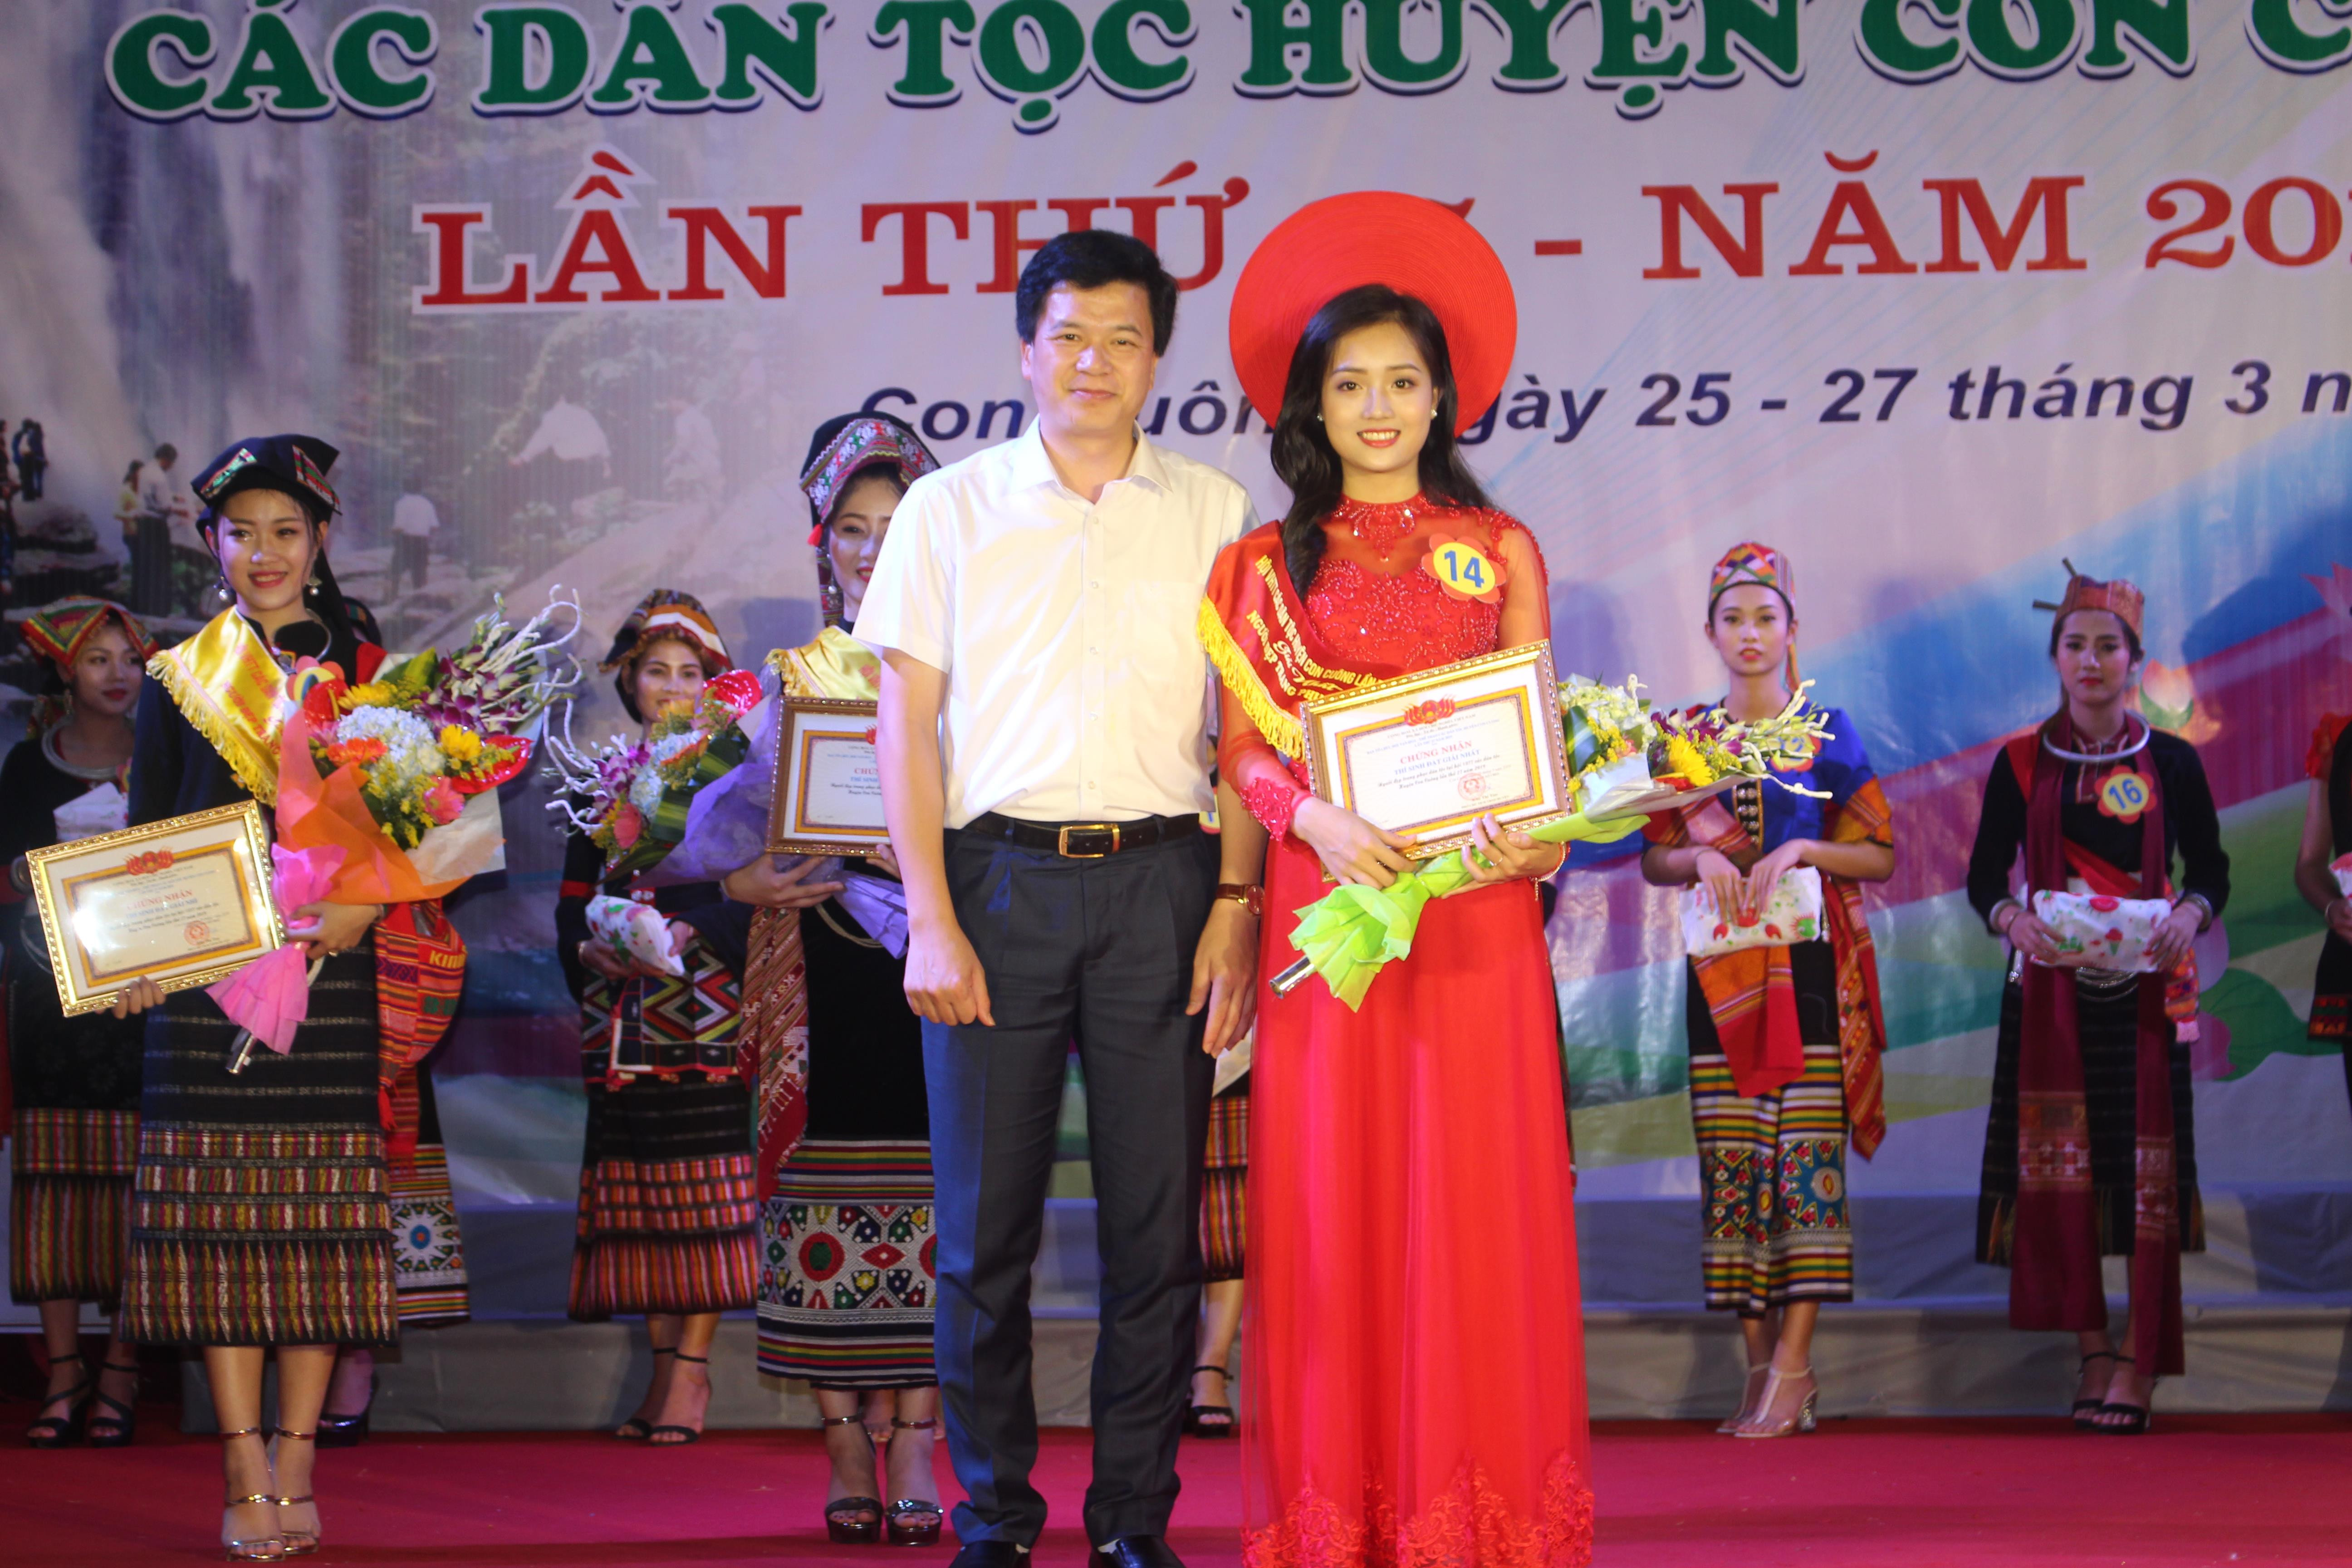 Đồng chí Nguyễn Đình Hùng - Ủy viên BCH Đảng bộ tỉnh, Bí thư Huyện ủy trao giải Nhất cho thí sinh Hà Thảo Danh đến từ Trường THPT Con Cuông.